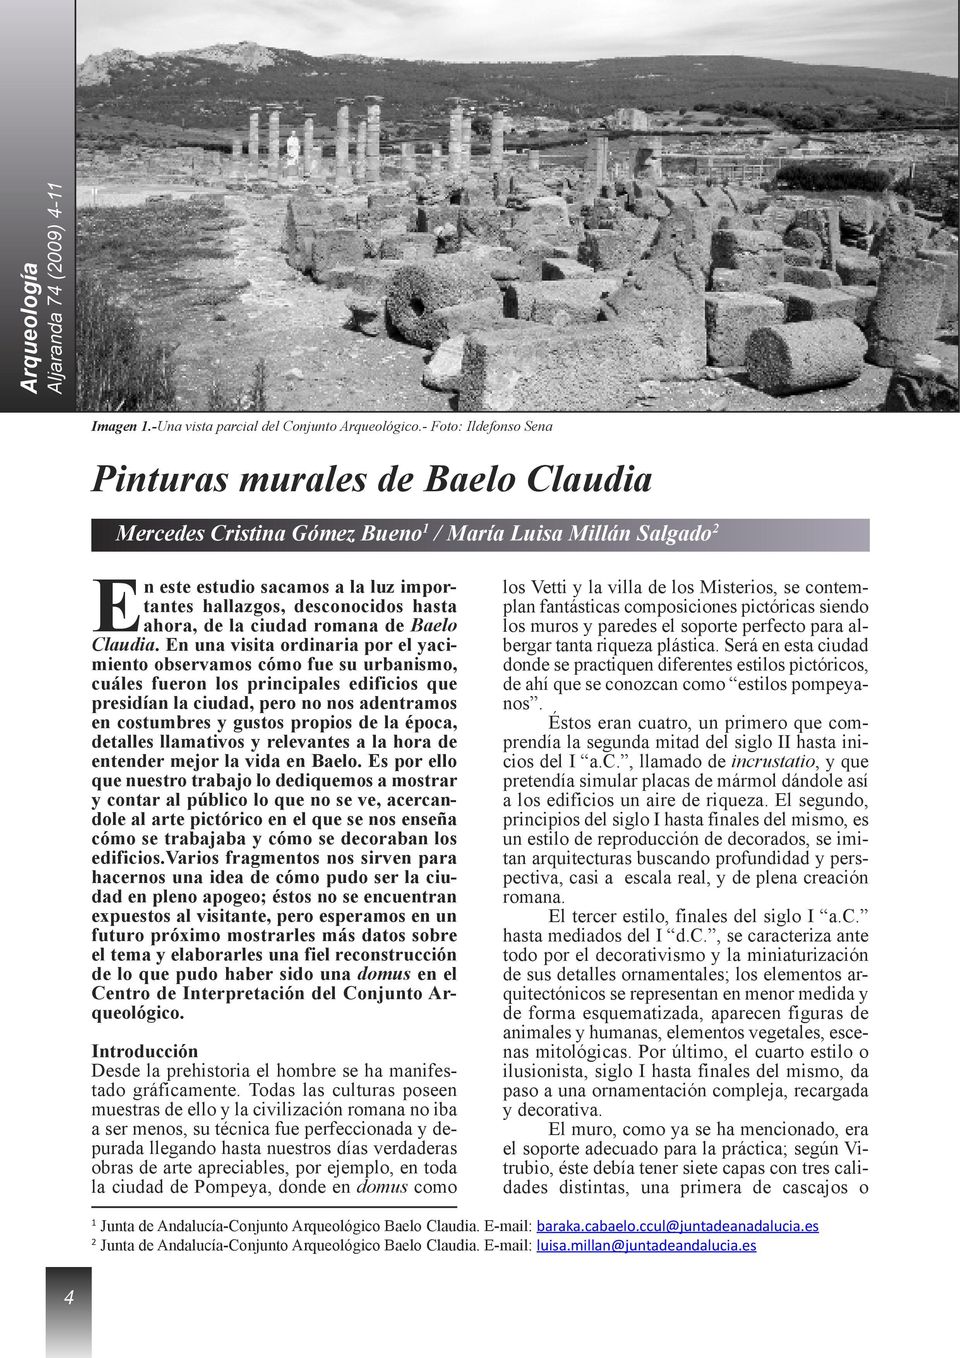 ahora, de la ciudad romana de Baelo Claudia.